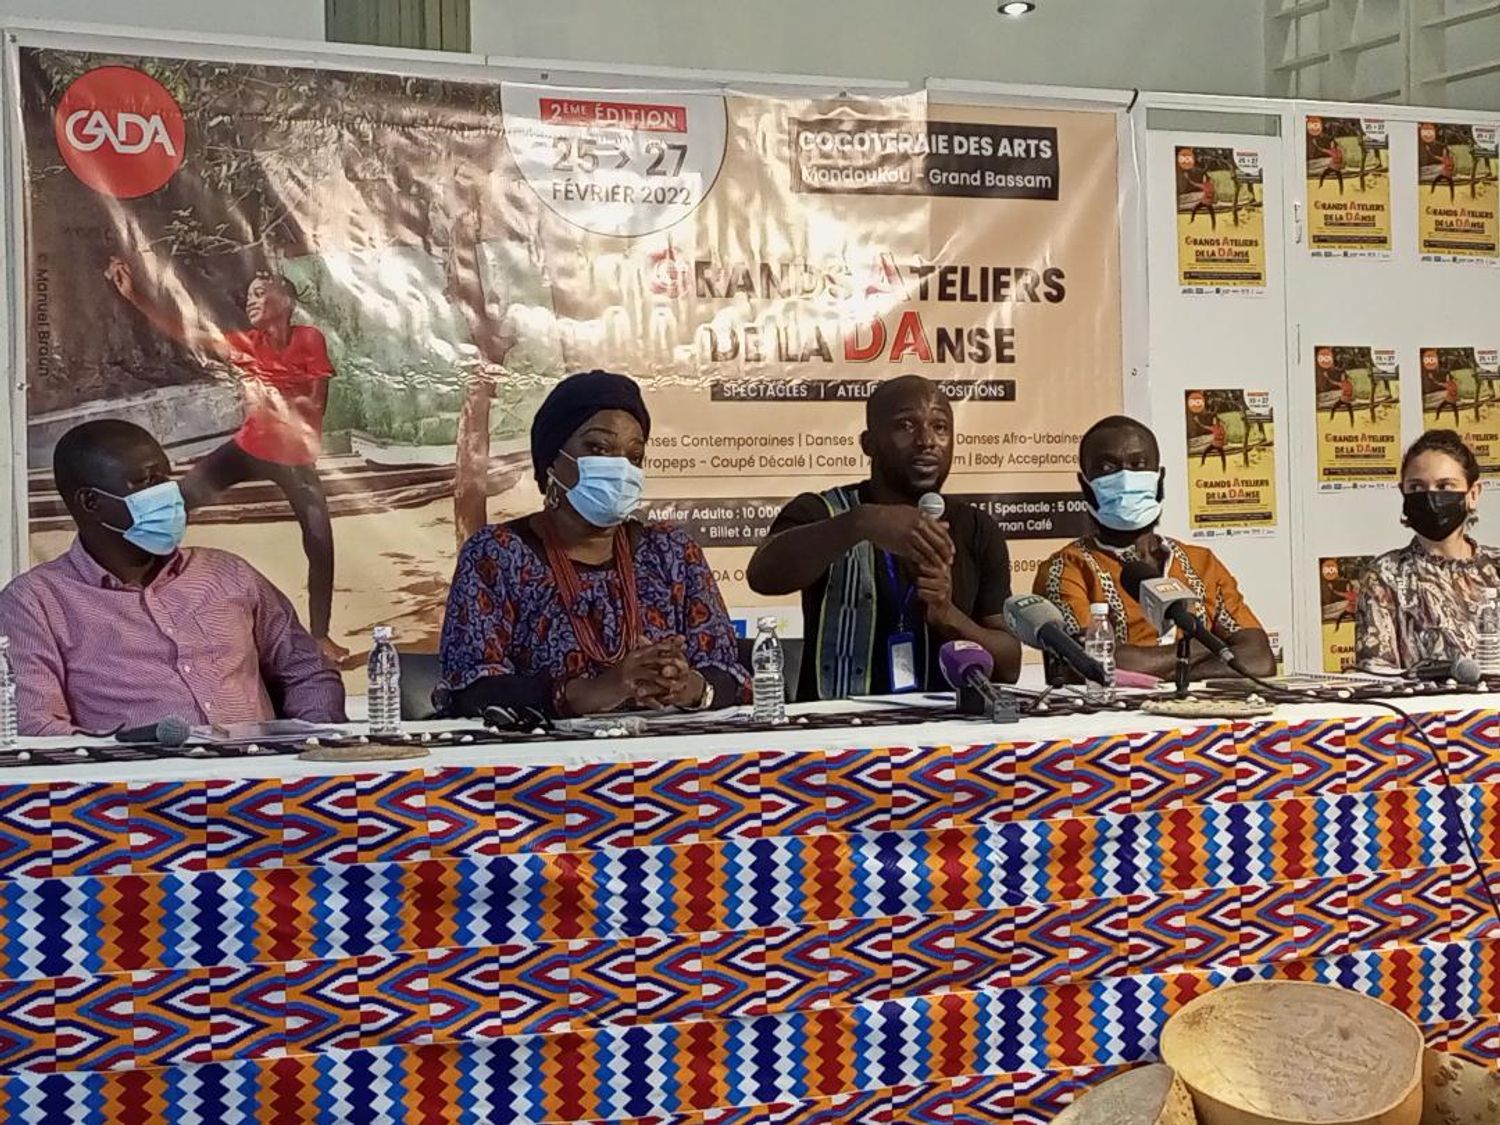 Côte d’Ivoire : La 2ème édition des Grands Ateliers de la Danse s’exporte à Grand-Bassam